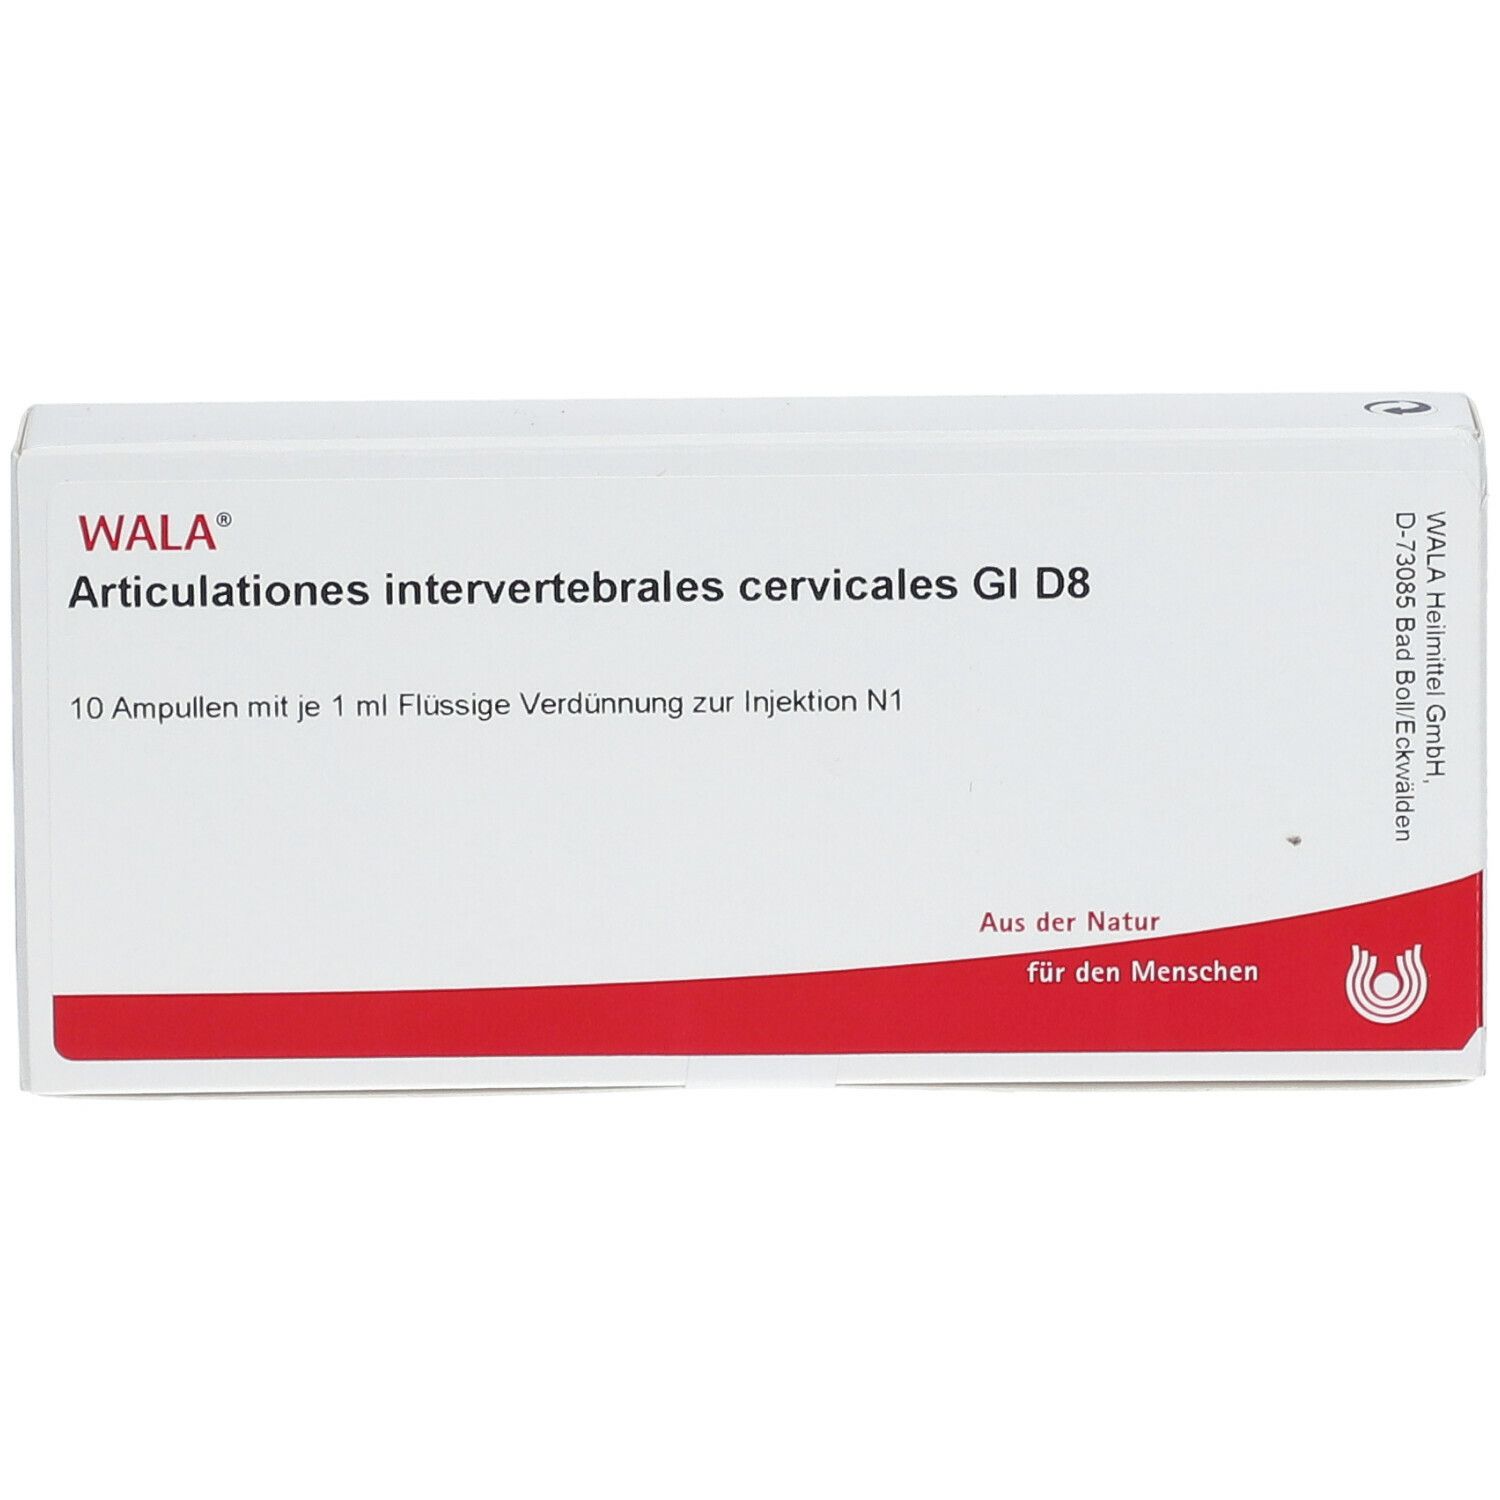 WALA® Articulationes intervertebrales cervicales Gl D 8